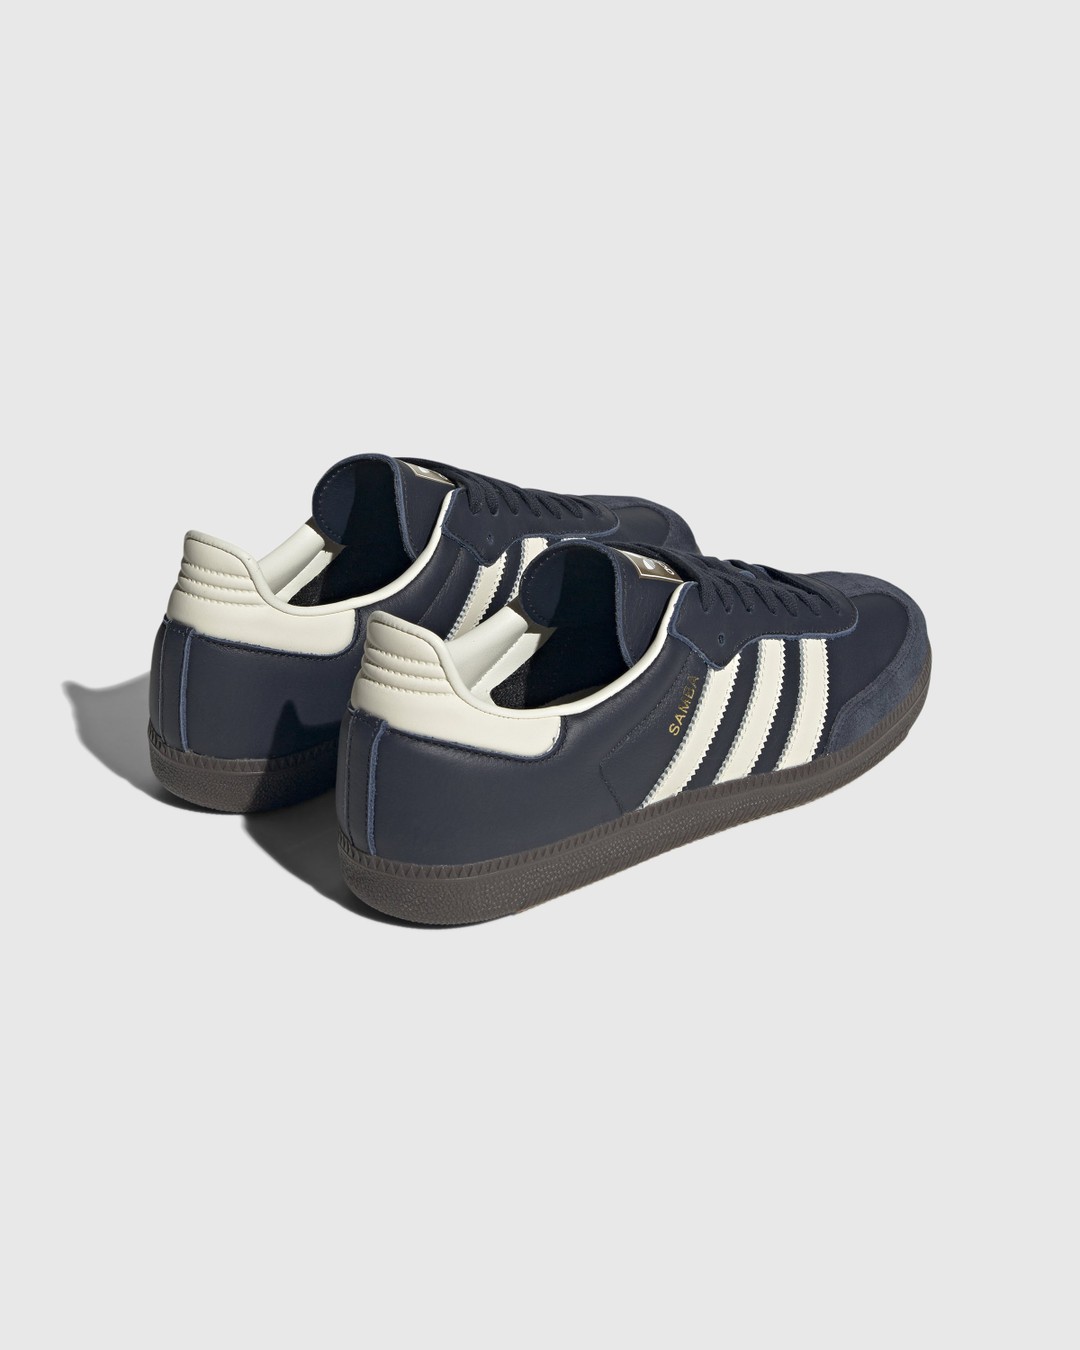 Adidas – Samba OG Navy/White  - Sneakers - Blue - Image 3